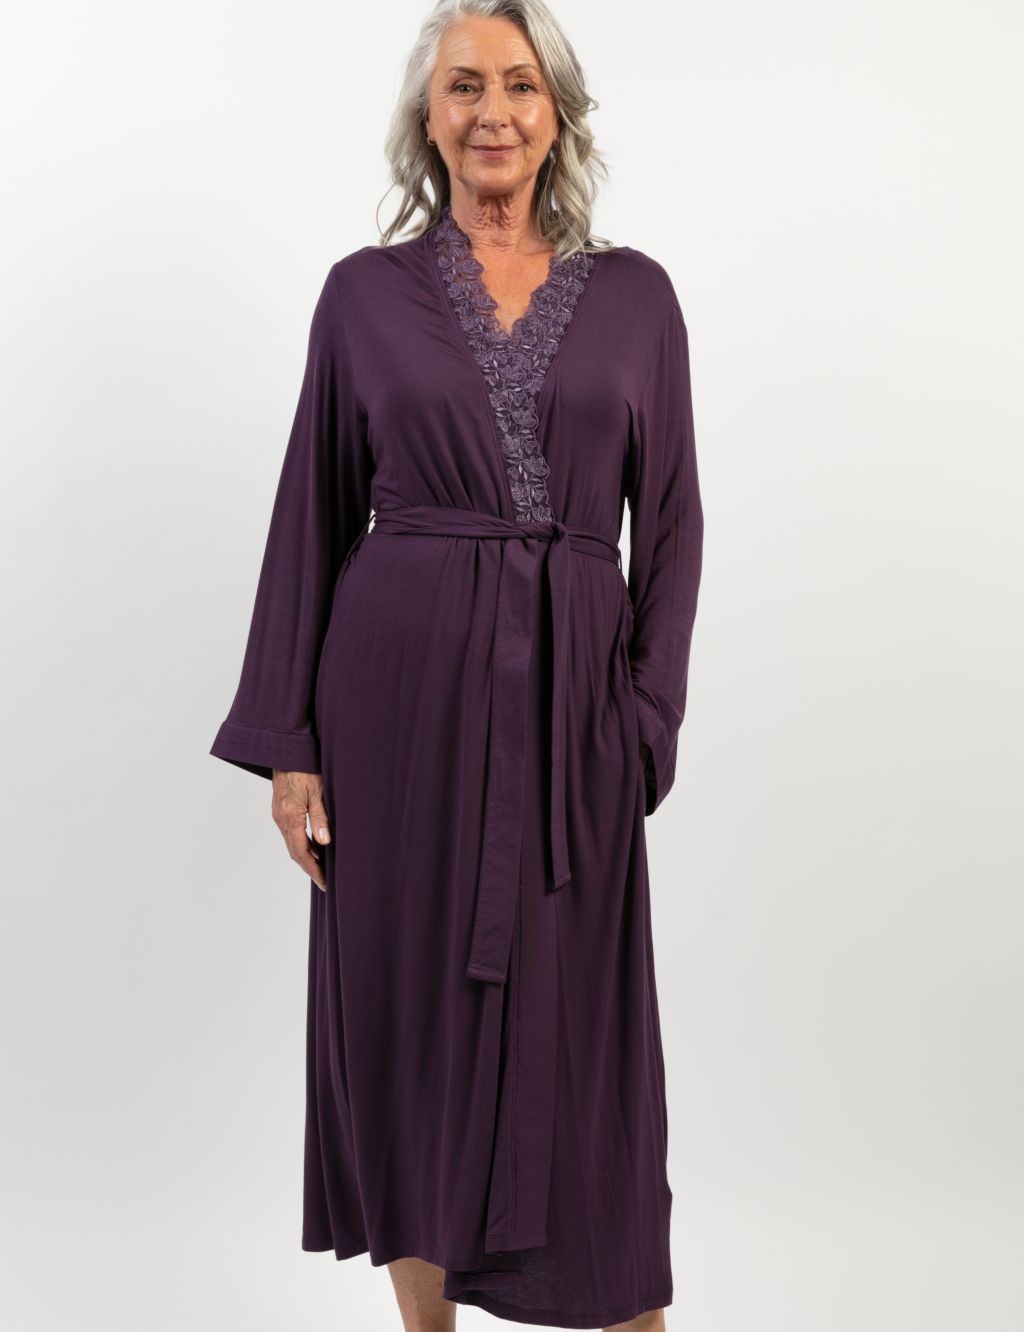 Modal Rich Lace Trim Long Dressing Gown image 1